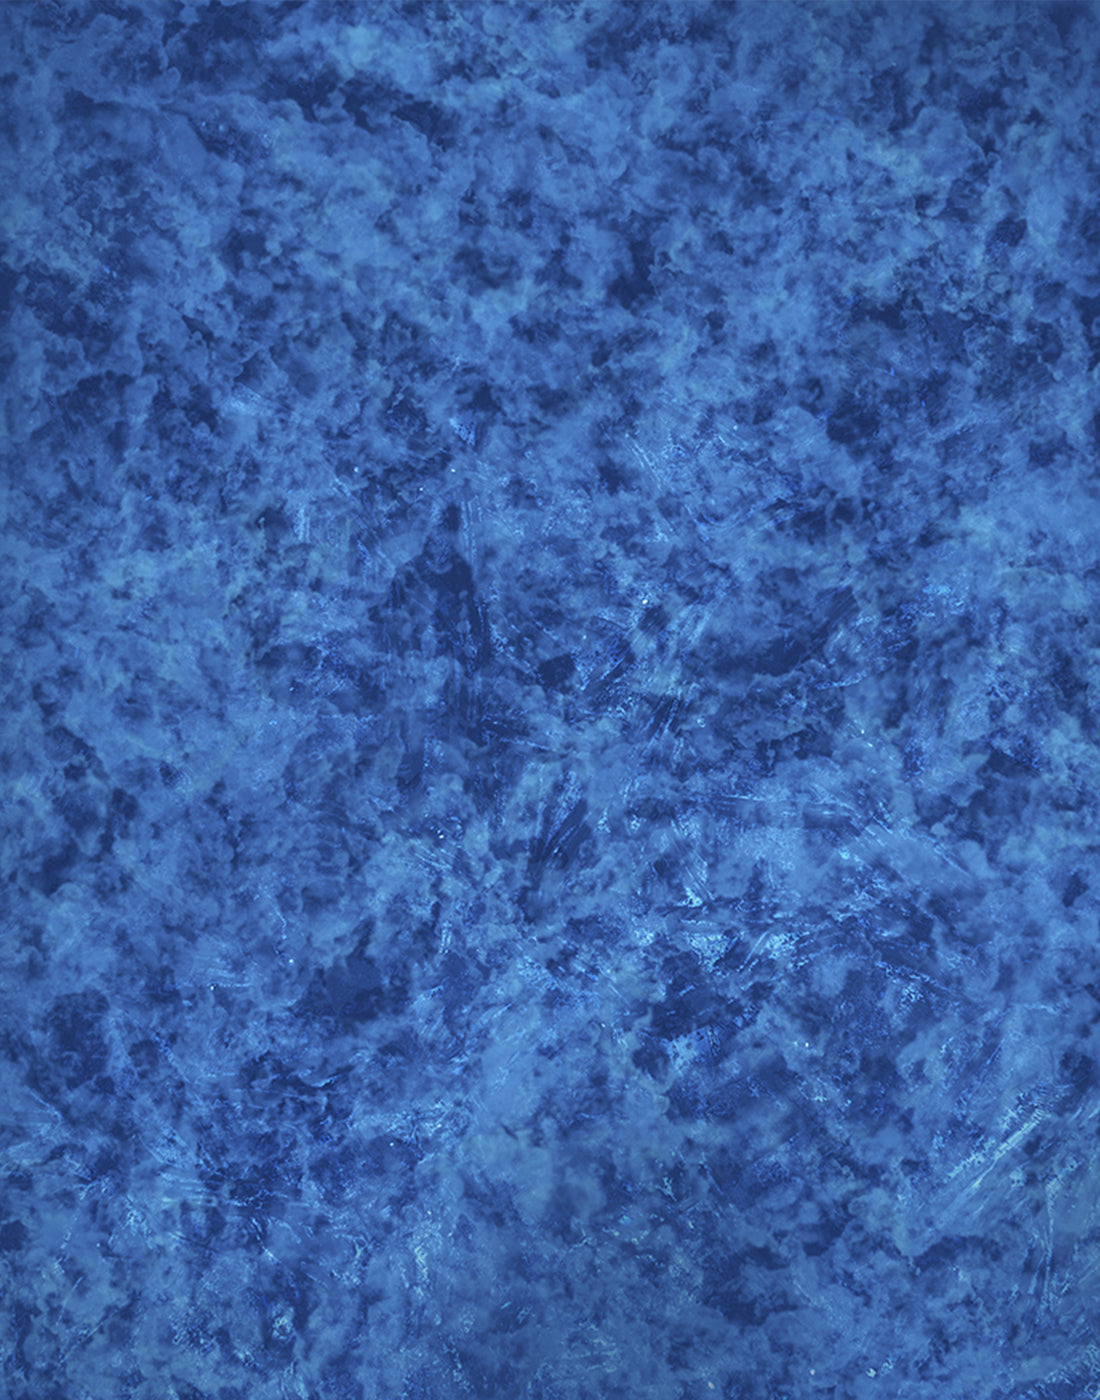 Blue Noise Texture Fashion Wrinkle Resistant Backdrop